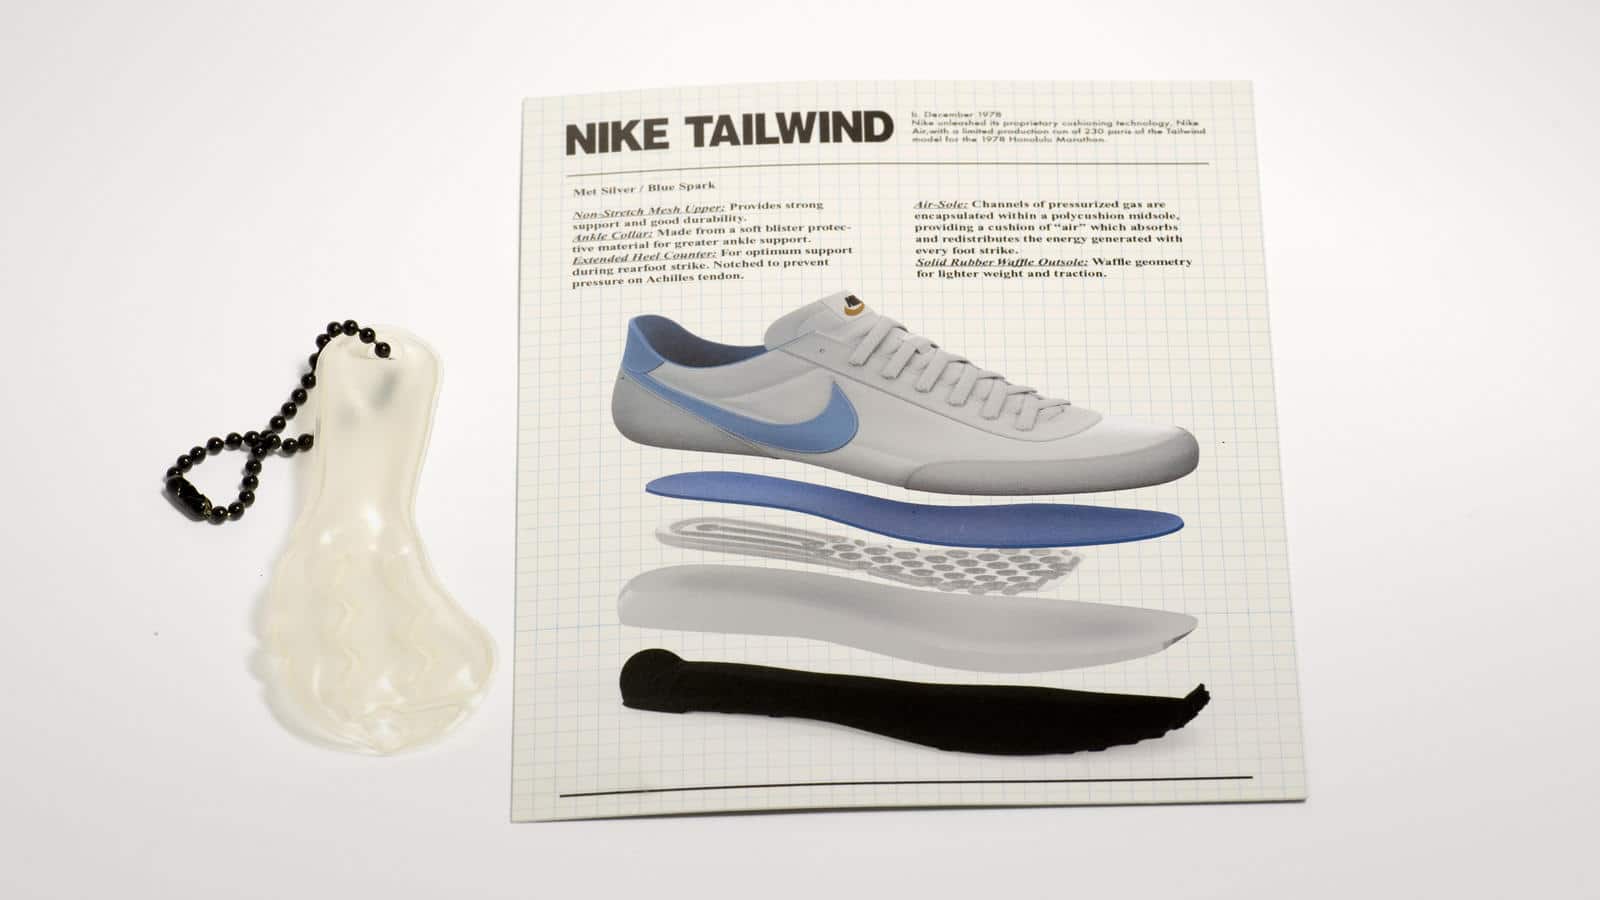 Lịch sử phát triển công nghệ Nike AIR - Đột phá công nghệ hay trò lố marketing - nike tailwind